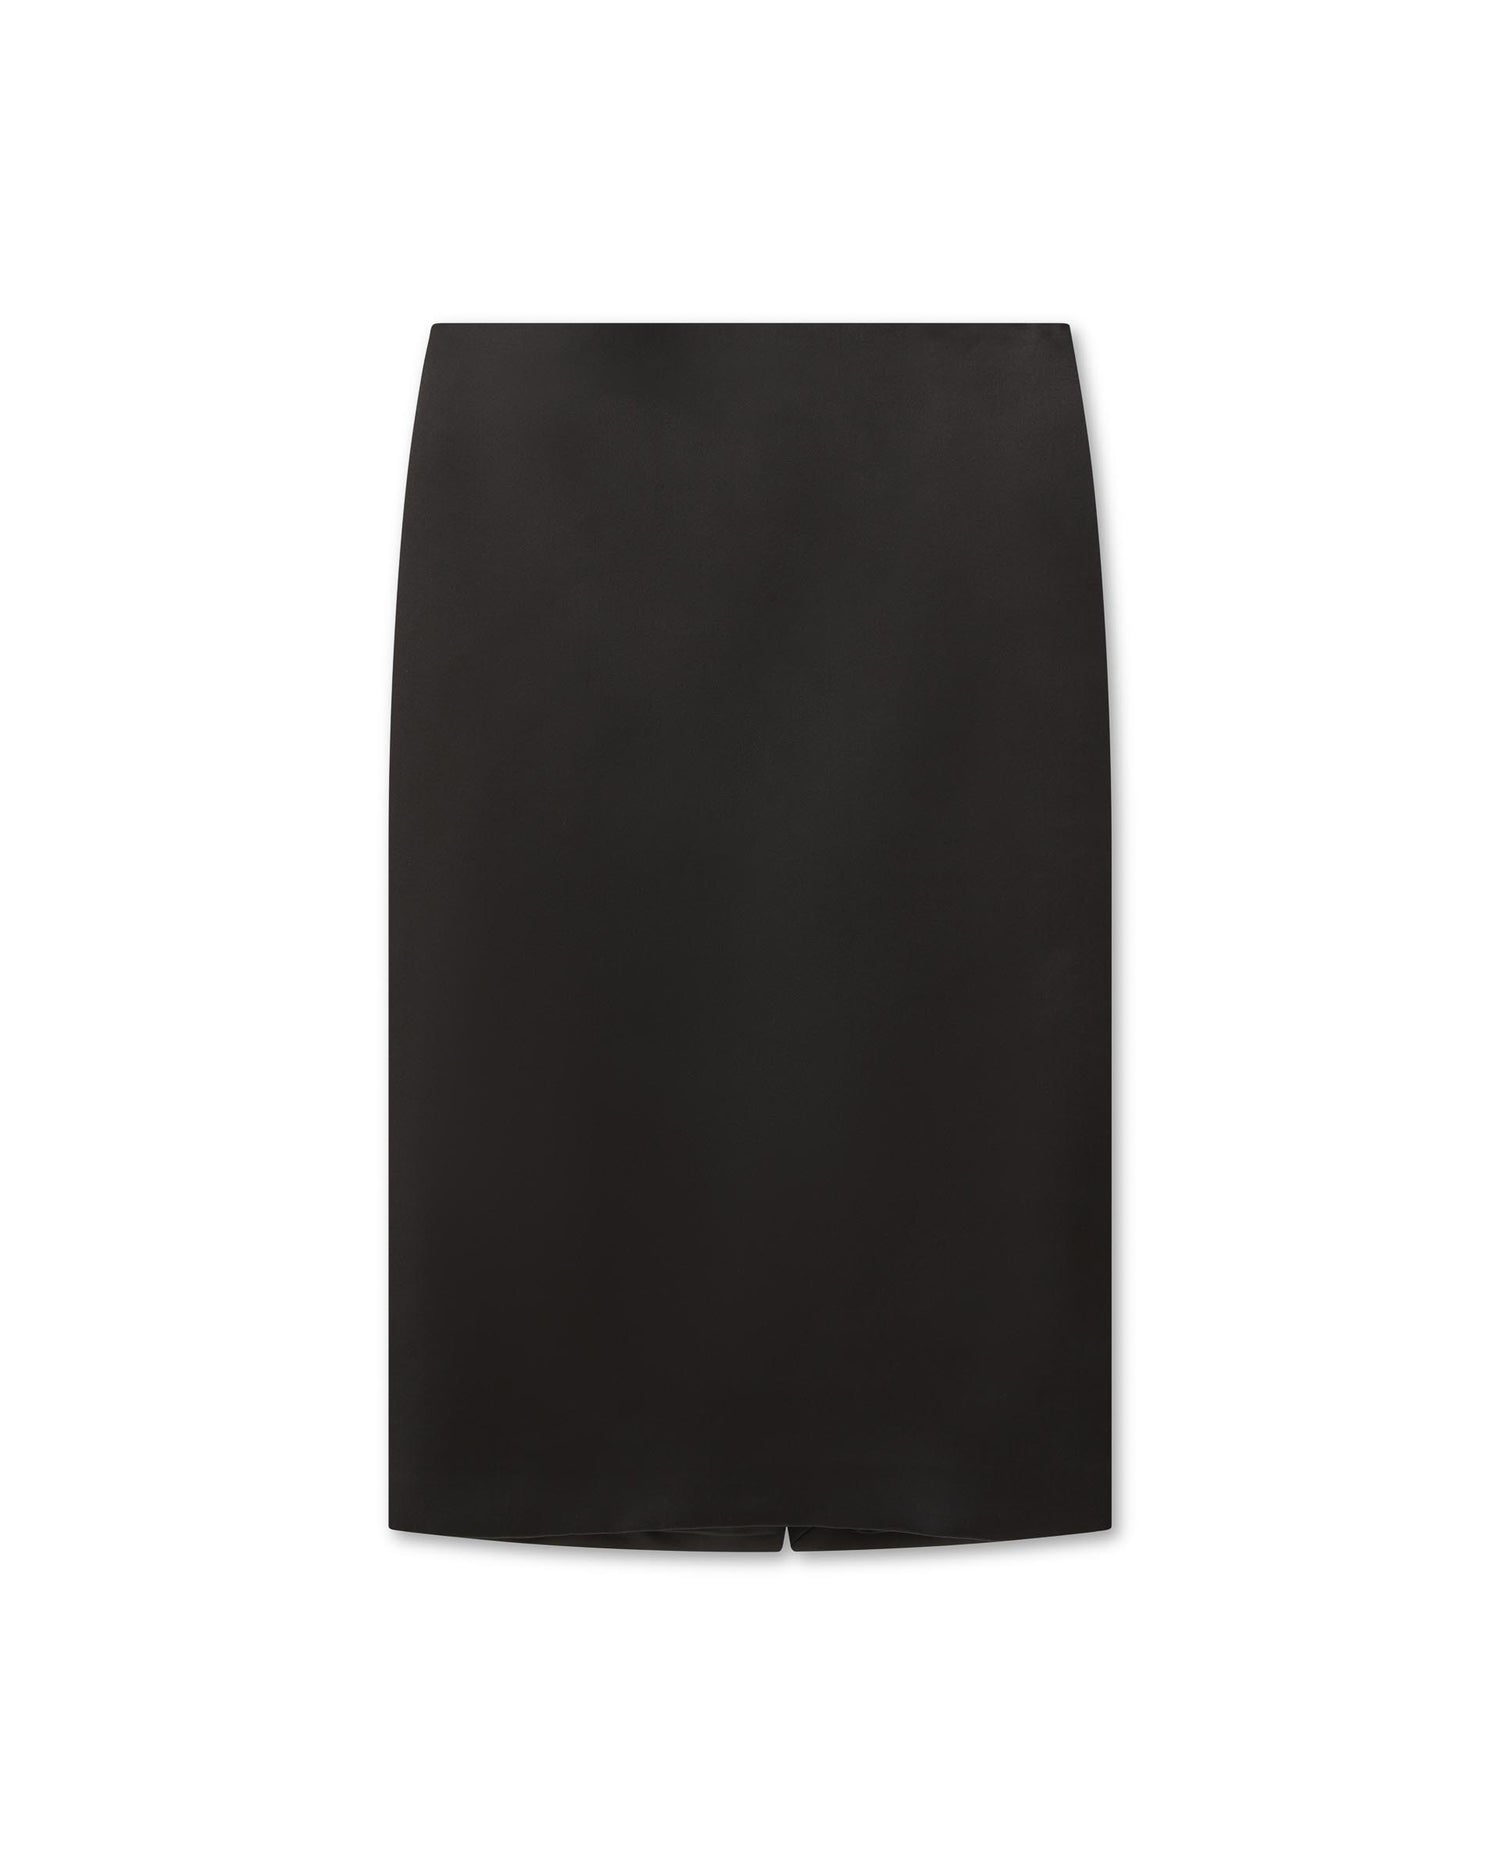 Nova Skirt in Duchess Silk, Black